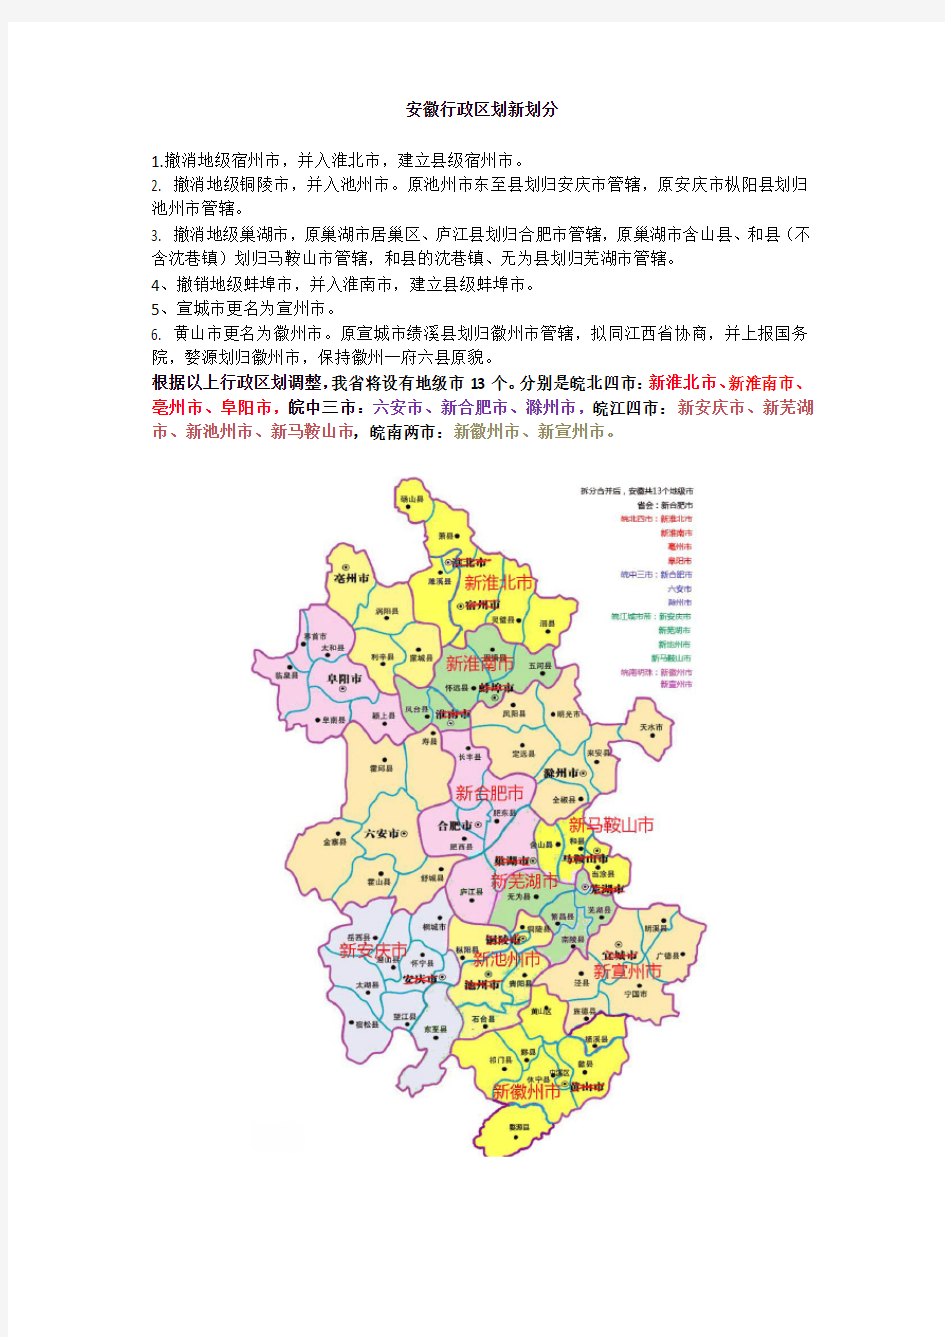 安徽行政区划终极构想2015年